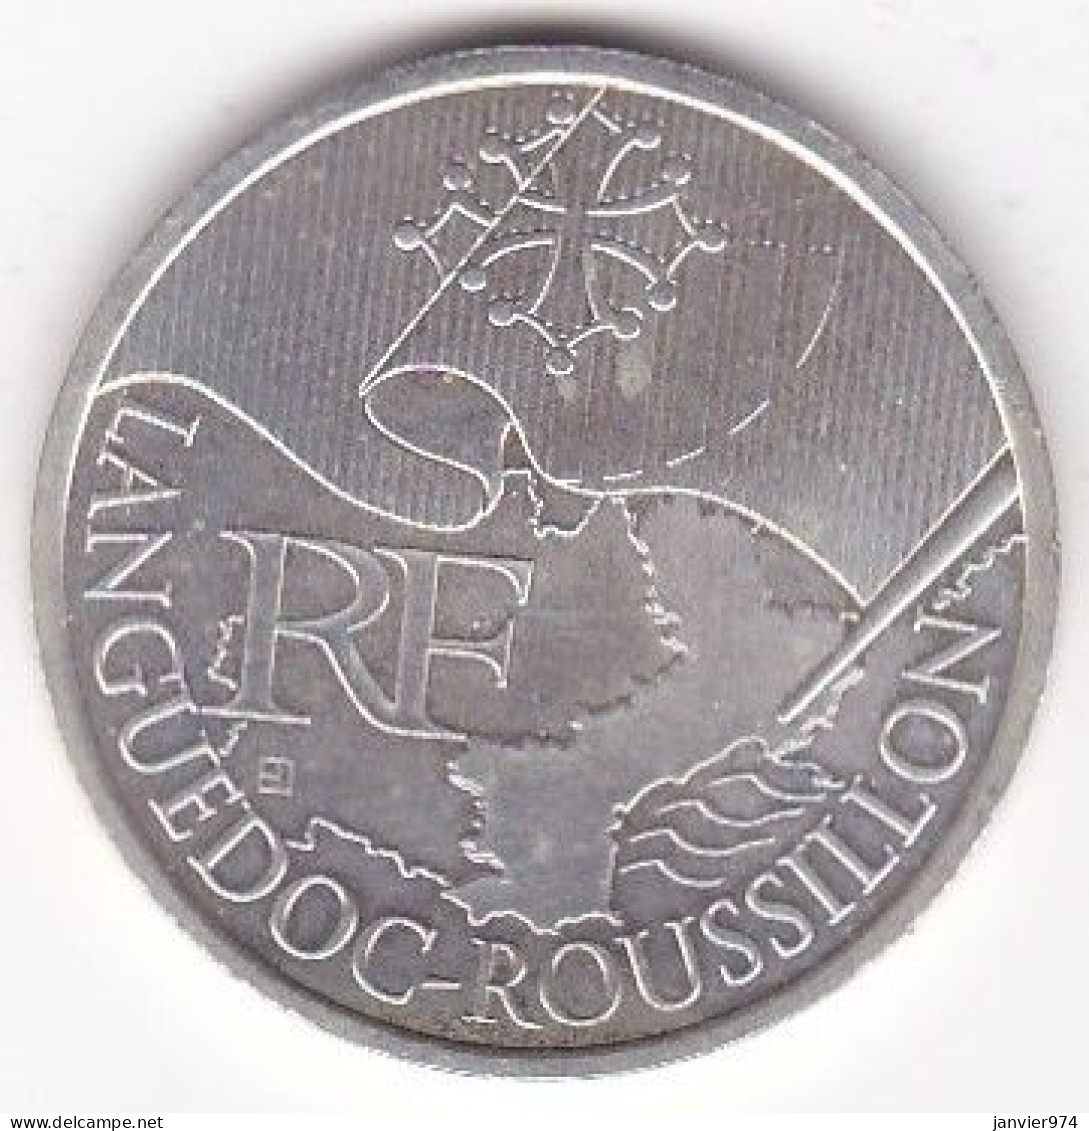 10 Euro Languedoc Roussillon 2010, En Argent - Frankreich